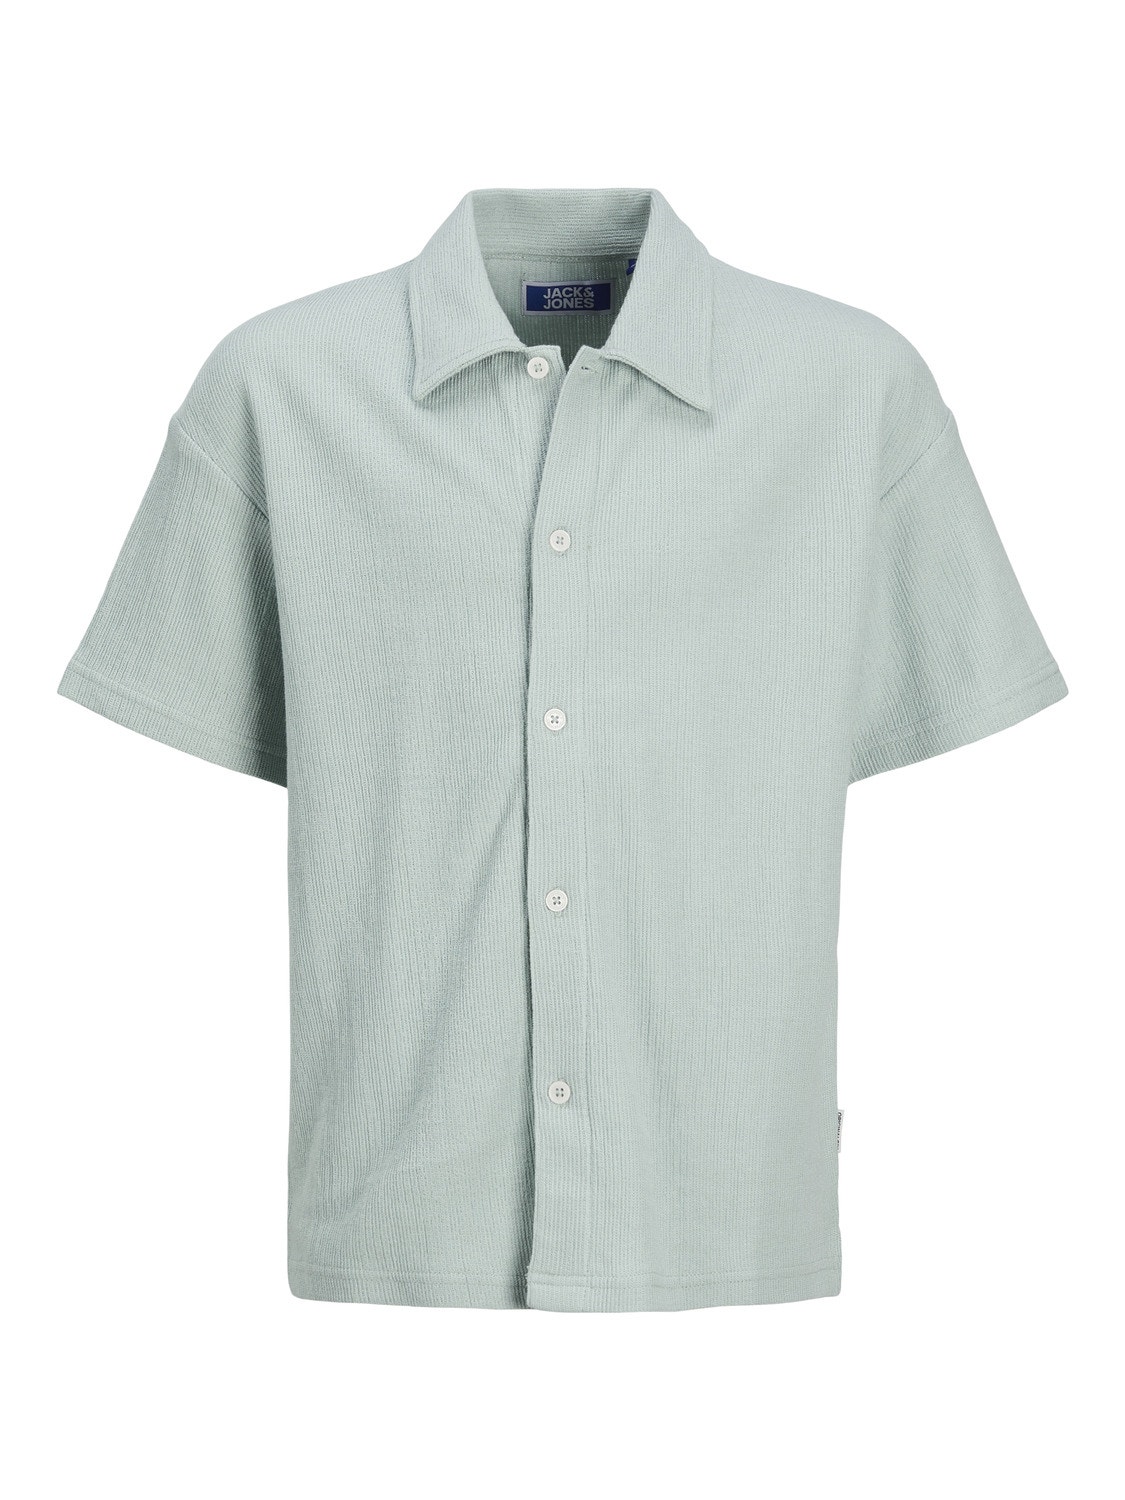 Jack & Jones Shirt For boys -Gray Mist - 12253994